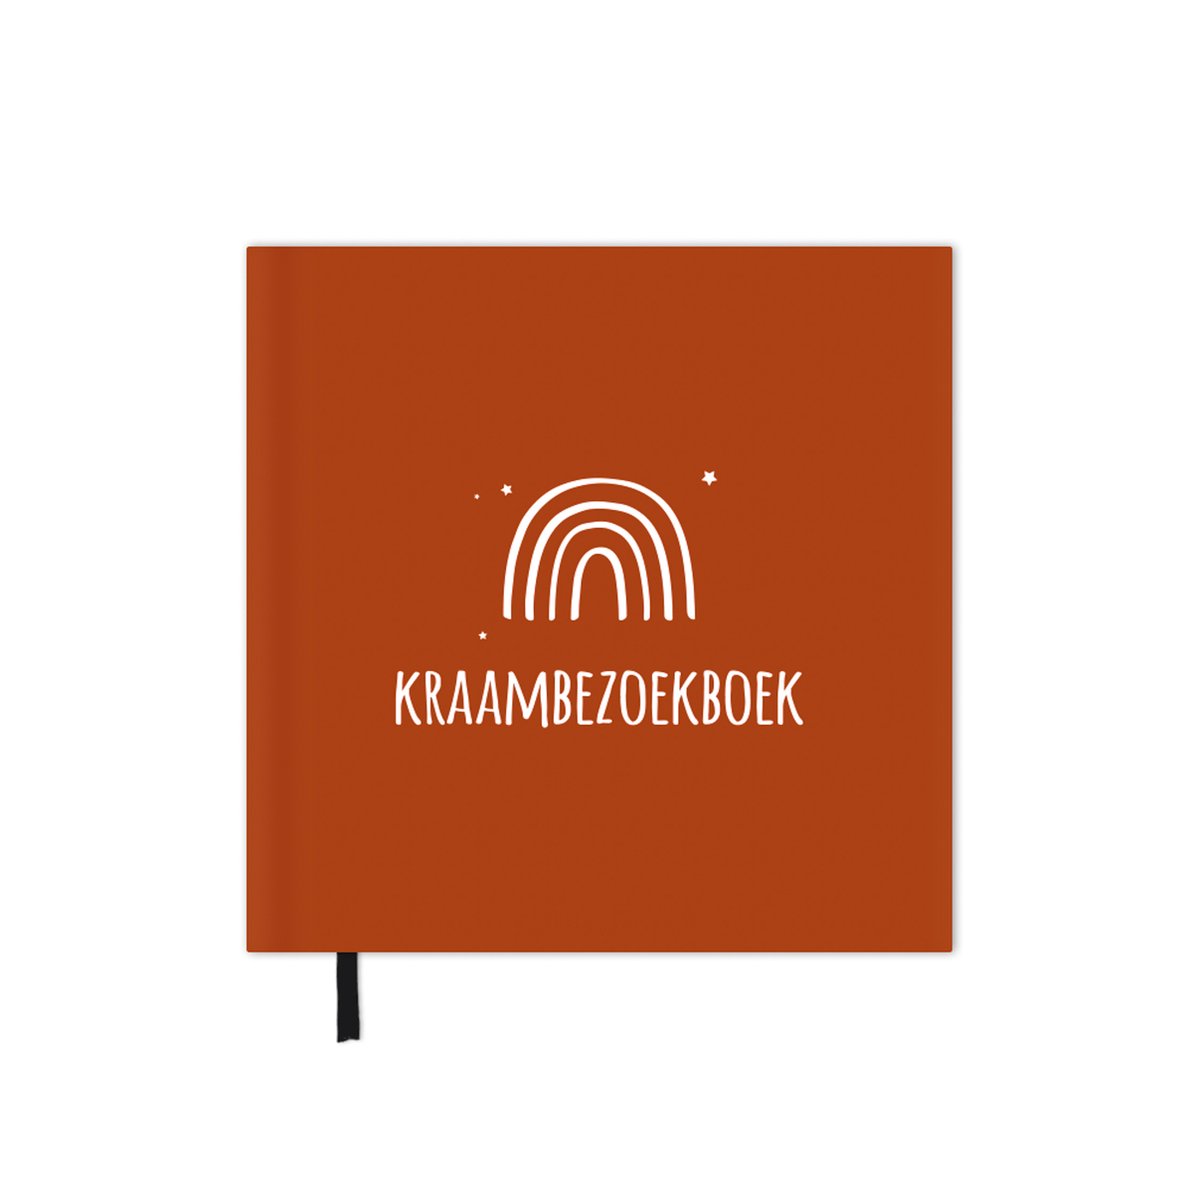 Kraambezoekboek | roest | terracotta | regenboog | kraamboek invulboek | kraamvisiteboek